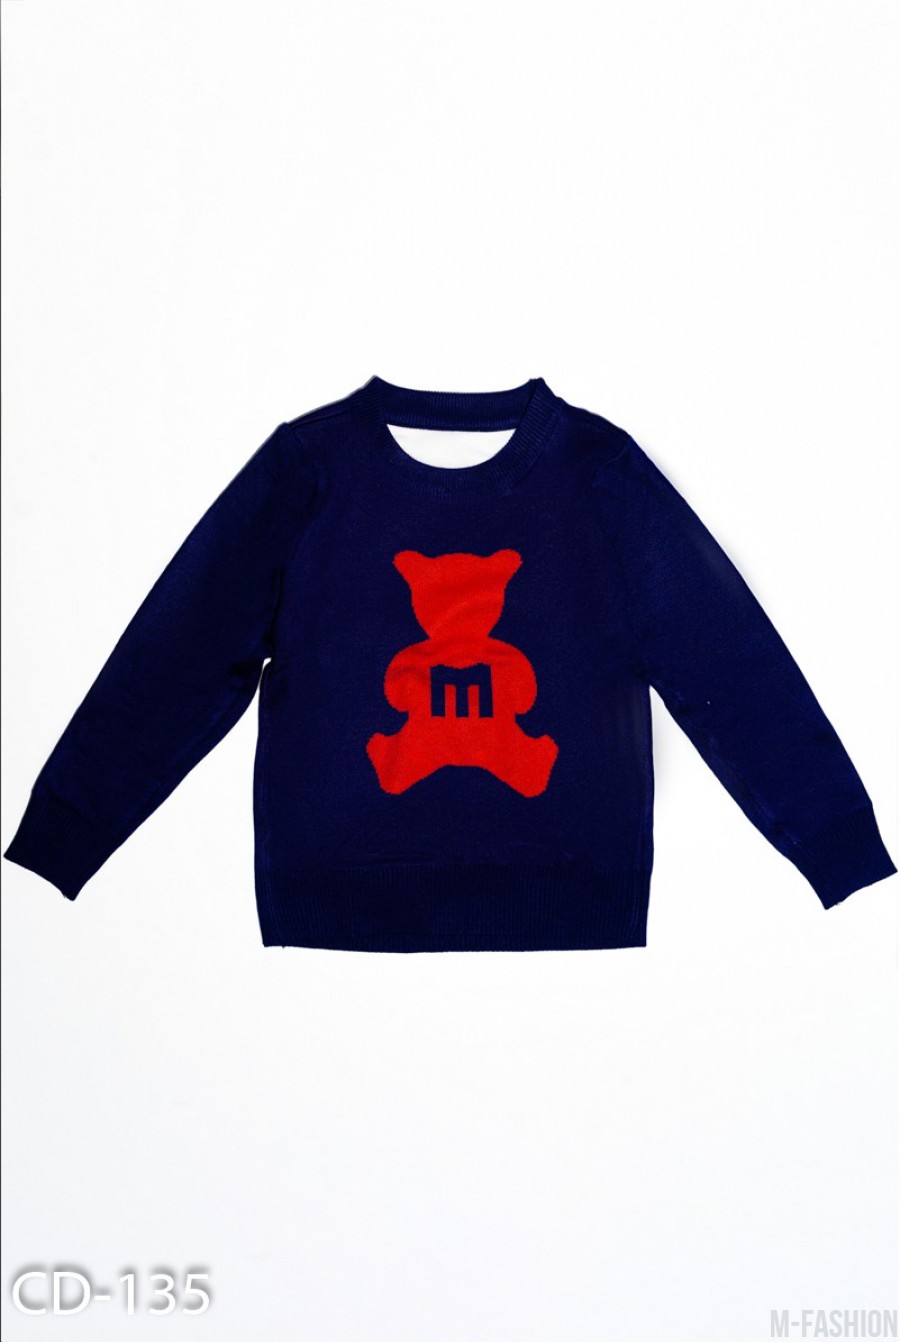 Темно-синий трикотажный свитер с красным мишкой - Фото 1